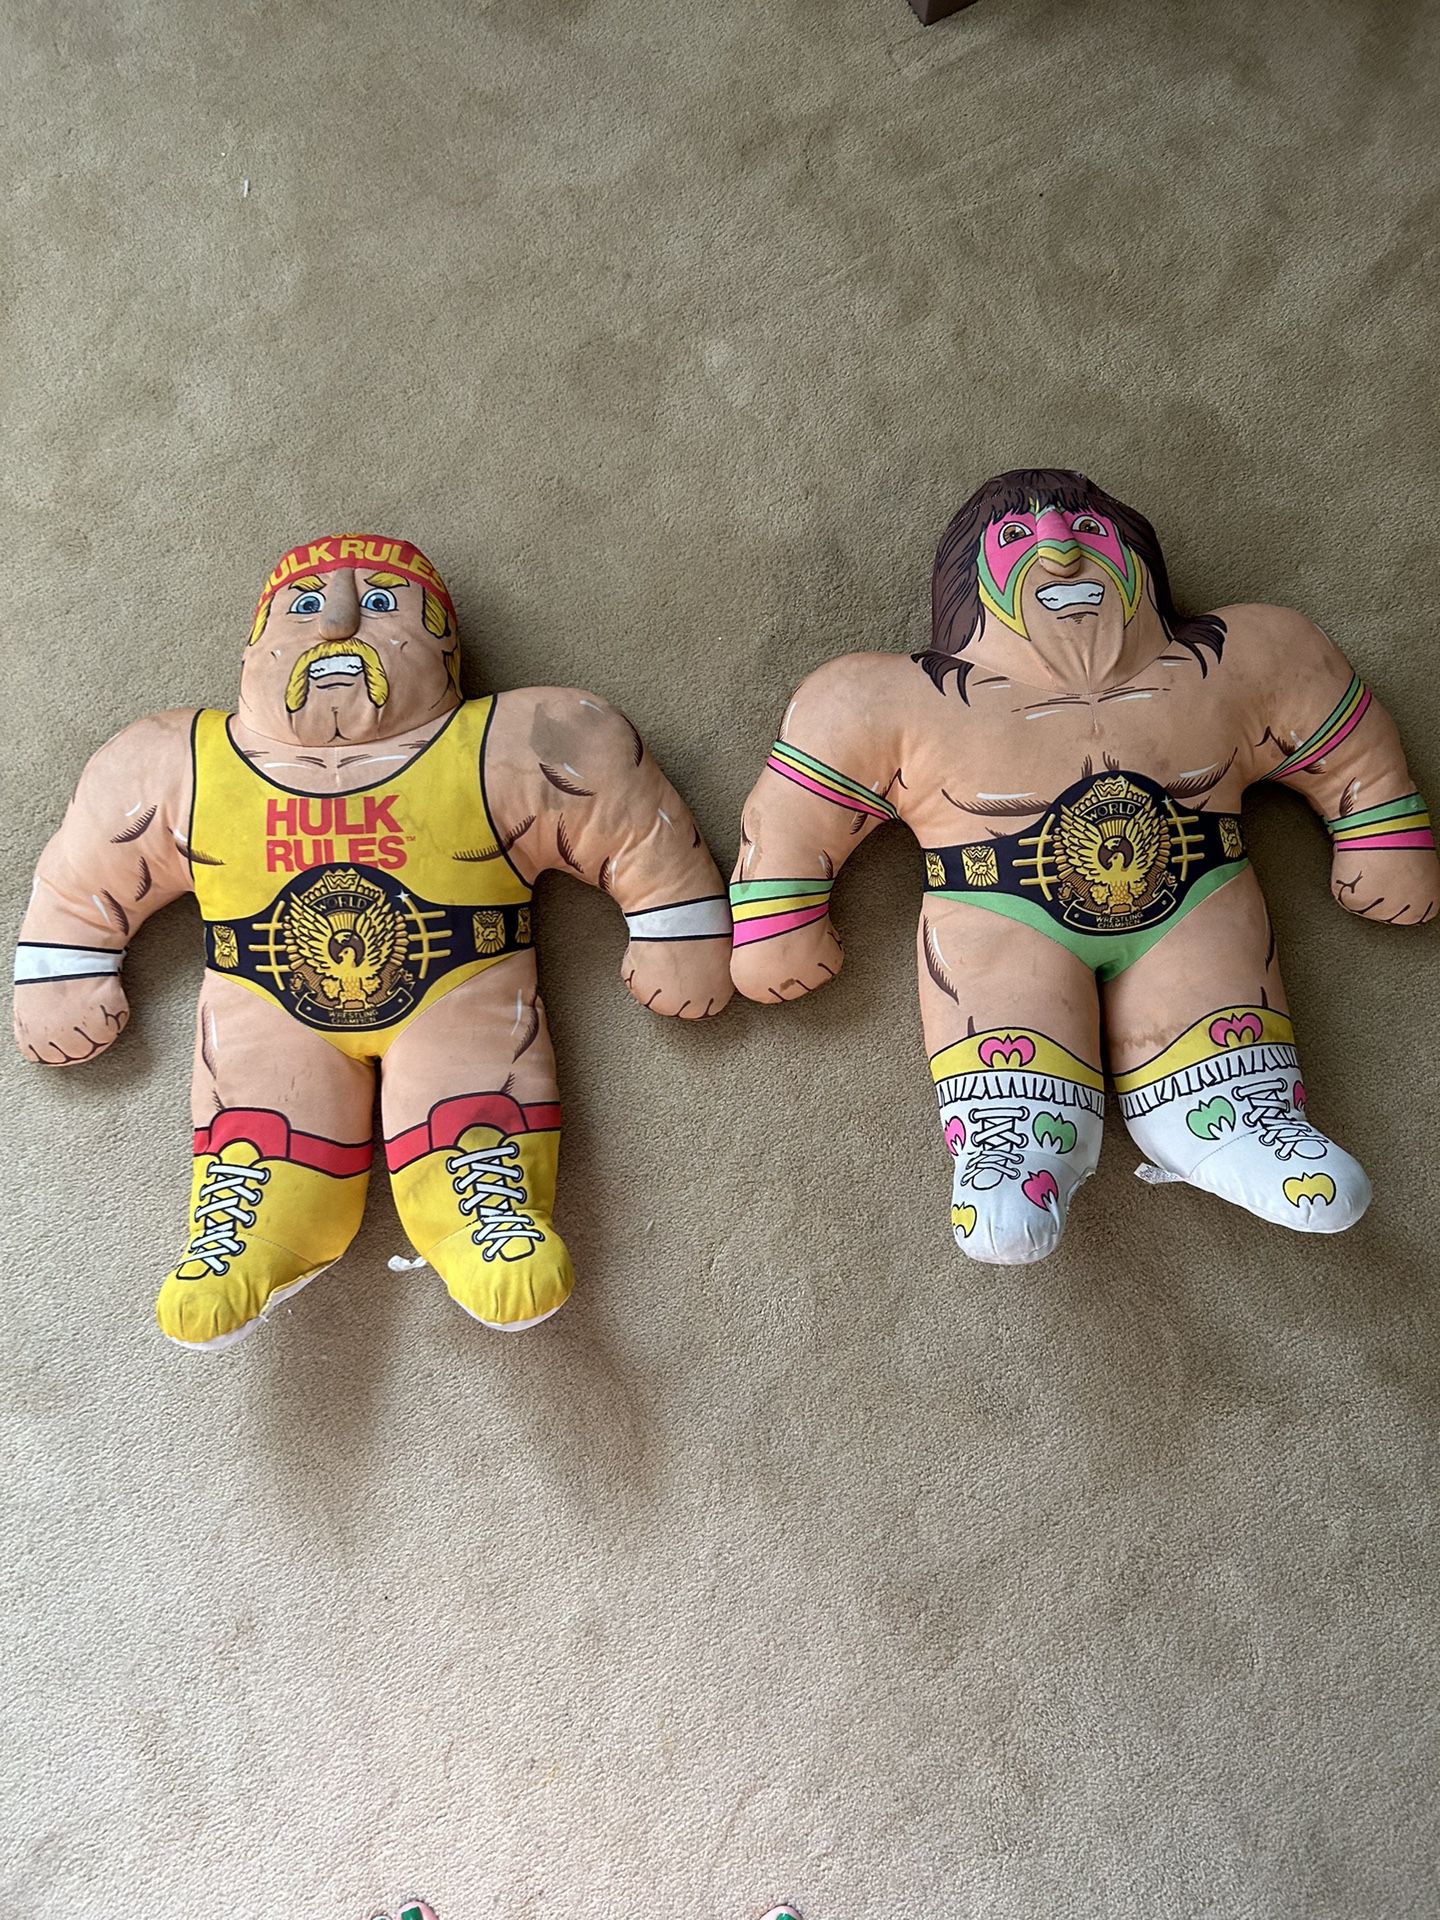 WWF Hulk Hogan Wrestling Buddies Toy Doll